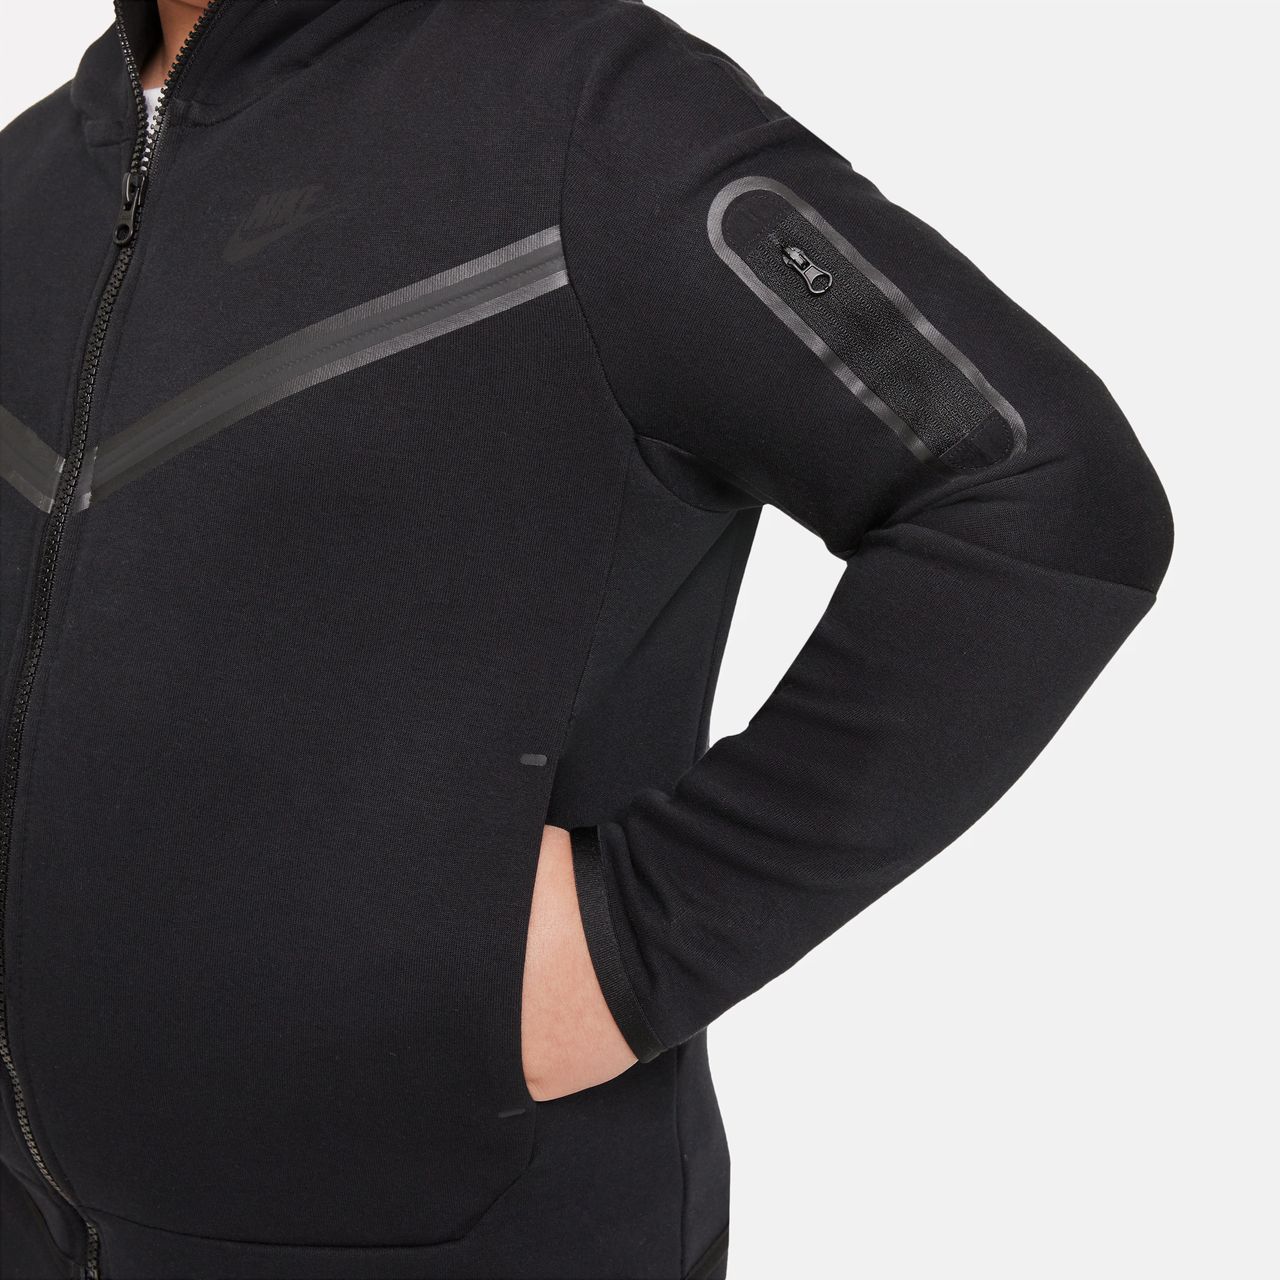 Nike Sportswear Tech Fleece Hoodie mit durchgehendem Reißverschluss für ältere Kinder (Jungen) (erweiterte Größe) - Schwarz